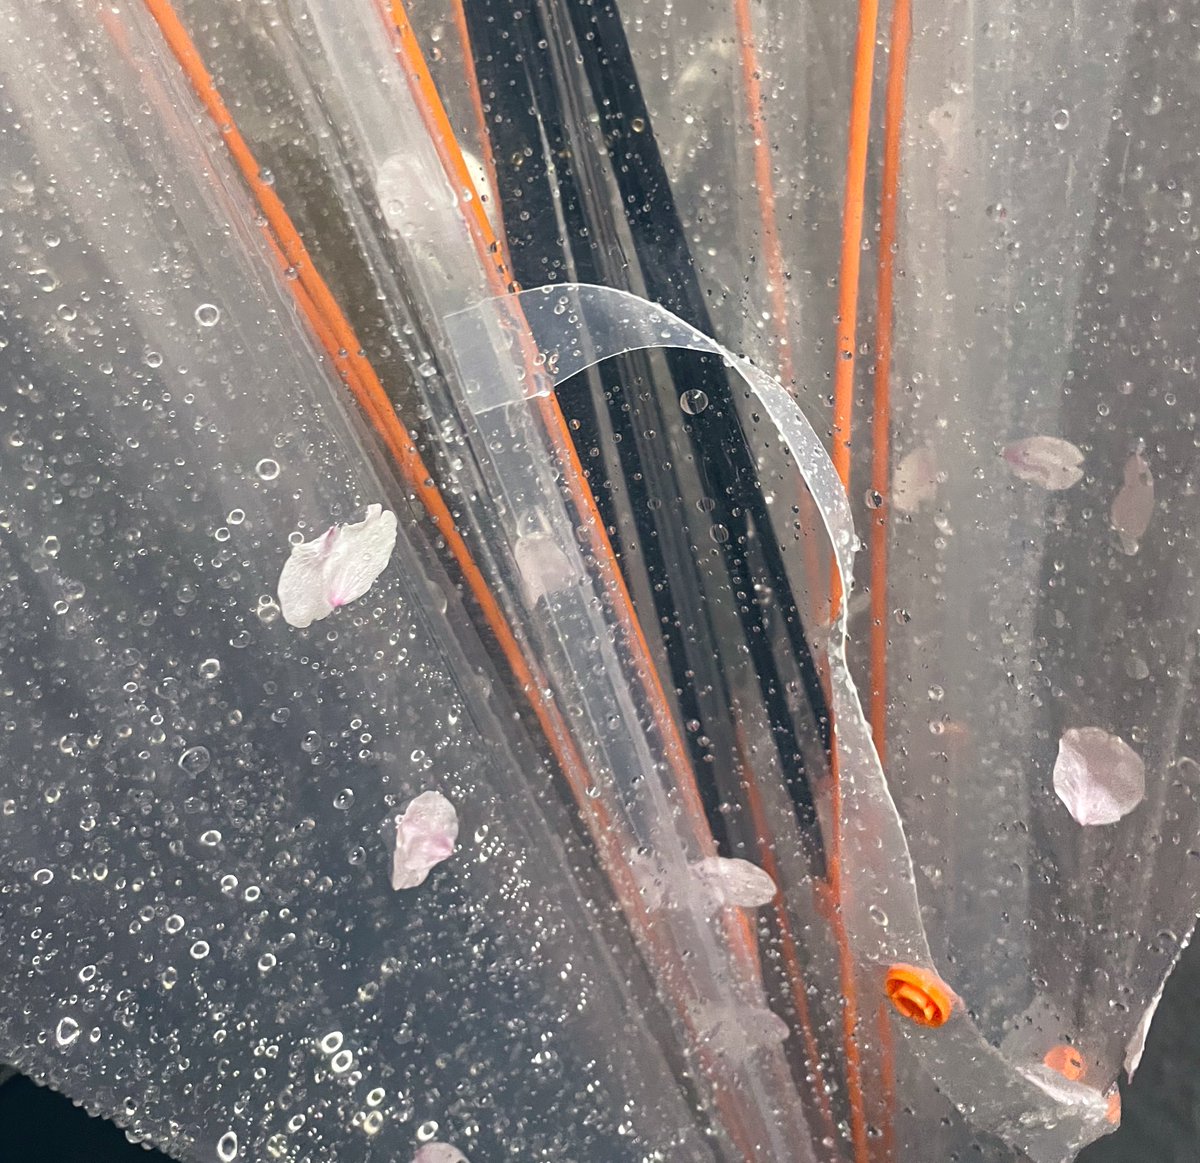 「みて傘に桜ついたかわいい 」|ナナヲアカリのイラスト